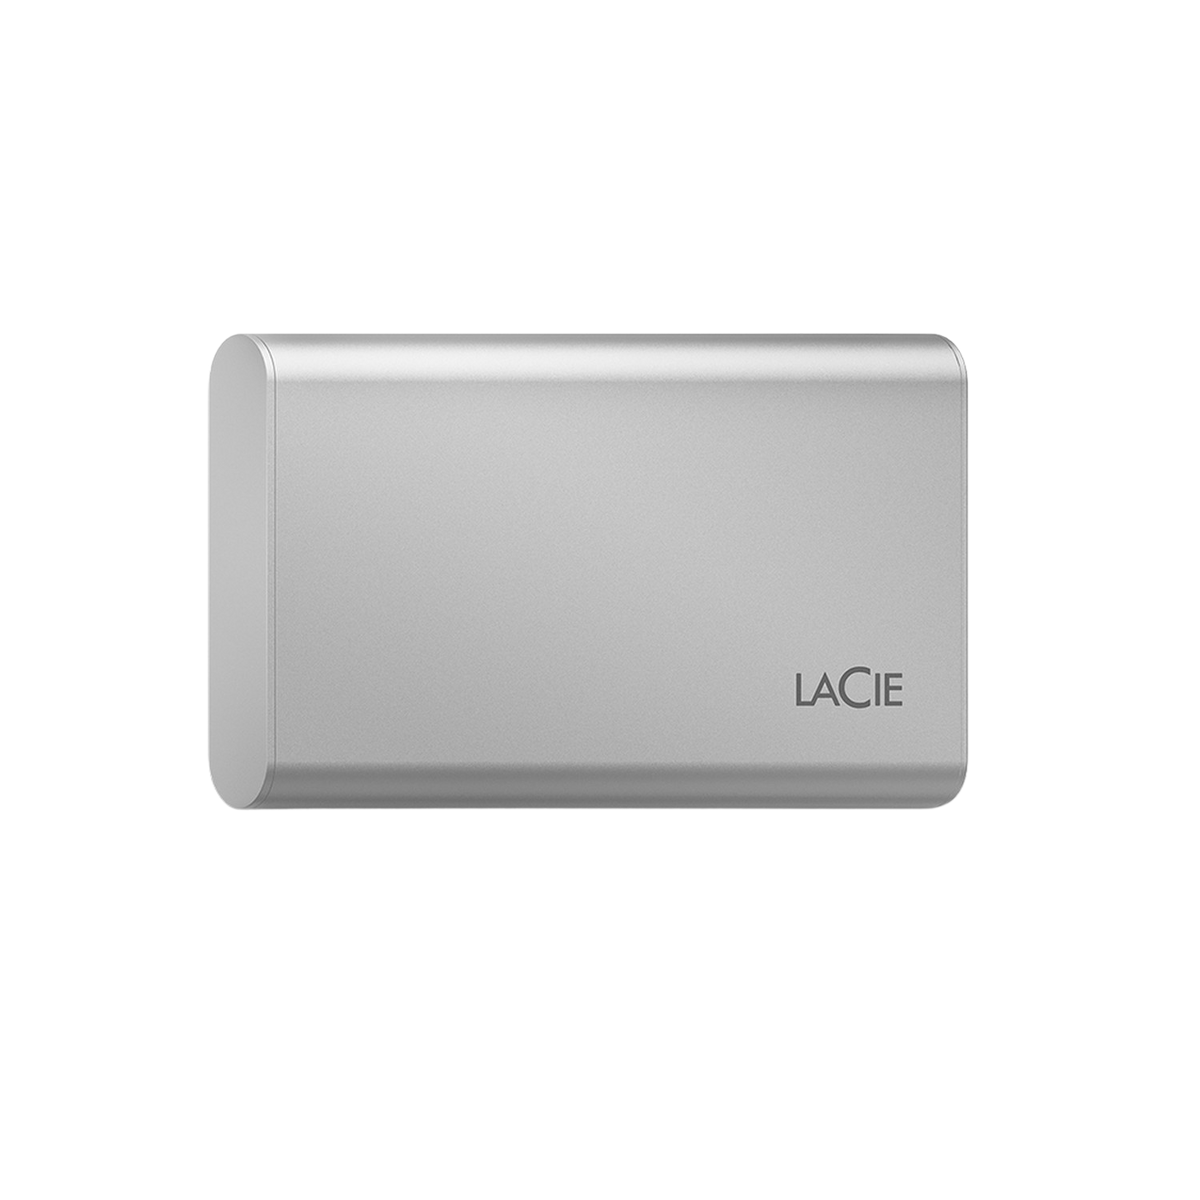 LACIE PORTABLE 2,5 Zoll, STKS1000400 V2 1 TB extern, SSD SSD, Silber 500GB,